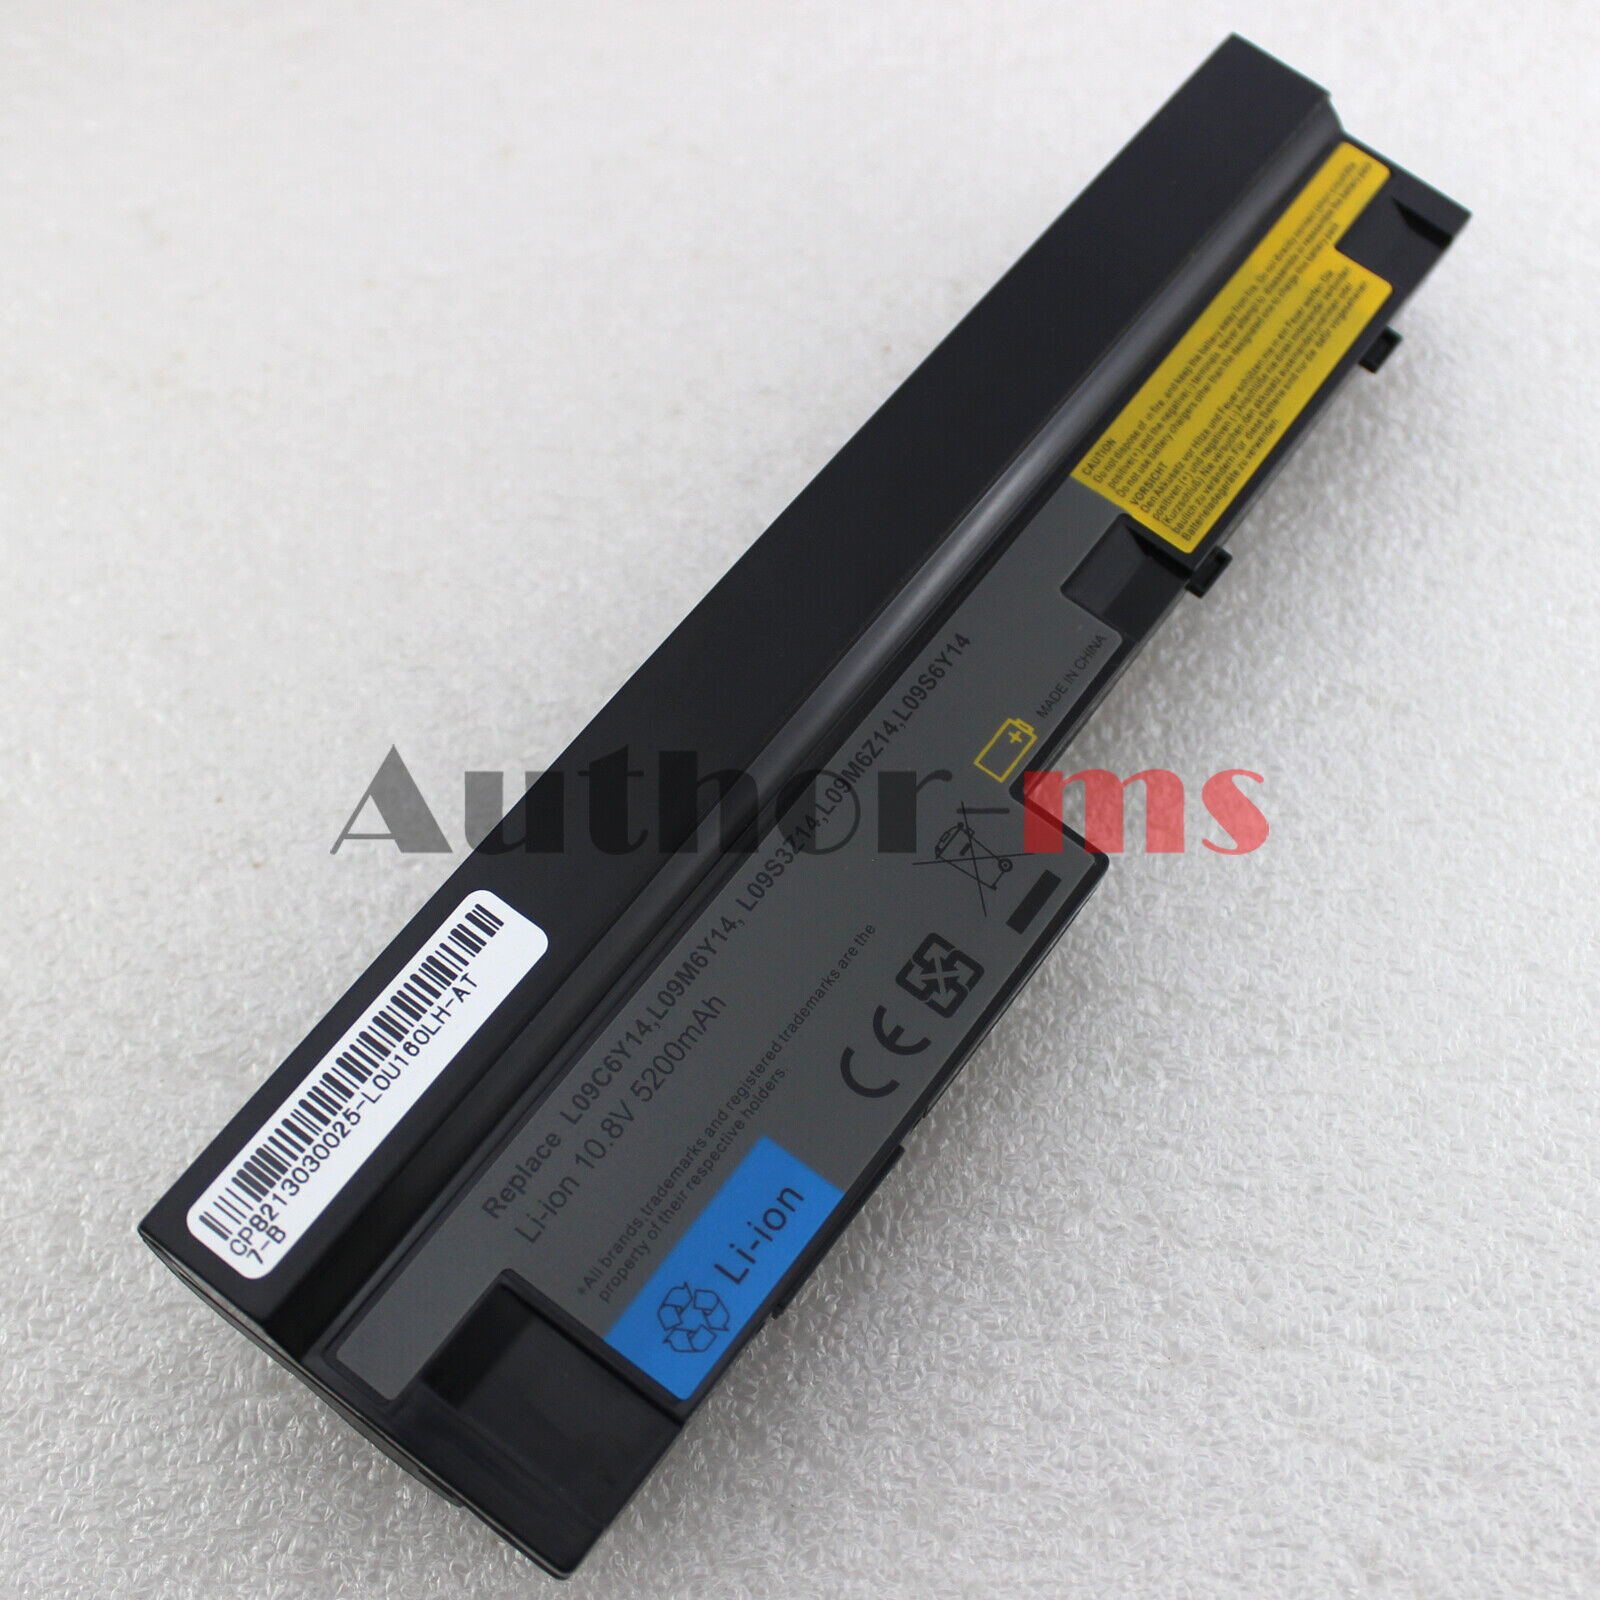 Battery for Lenovo IdeaPad S10-3 0647 S100c S110 S205 L09S6Y14 L09C6Y14 57Y6517